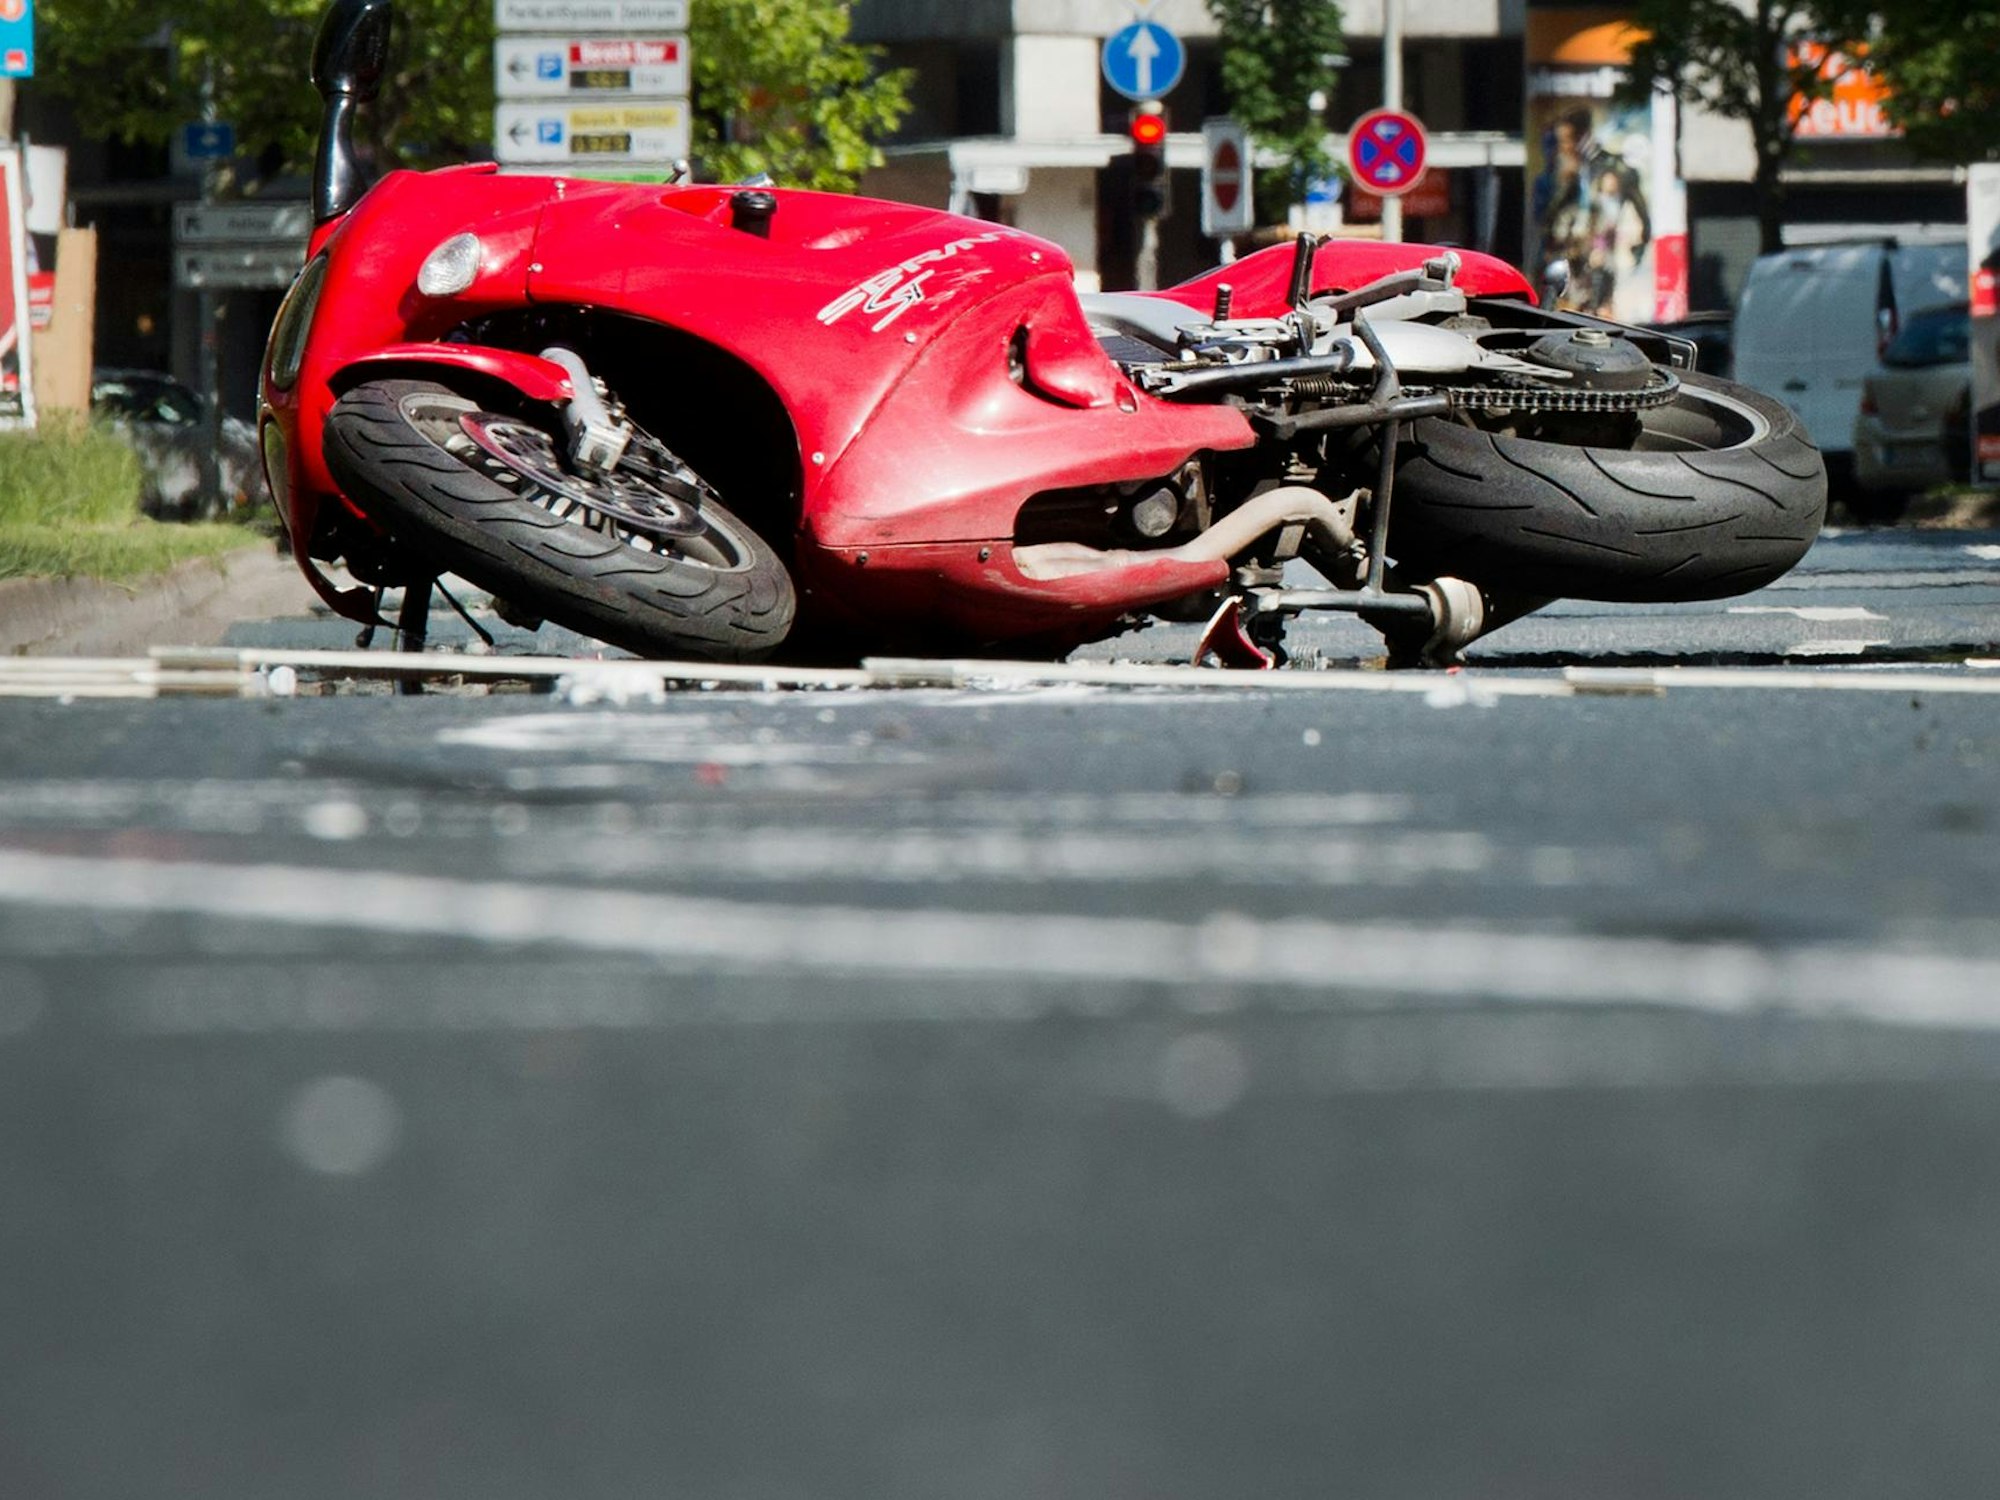 Köln. Ein rotes Motorrad liegt nach einem Unfall auf dem Boden.